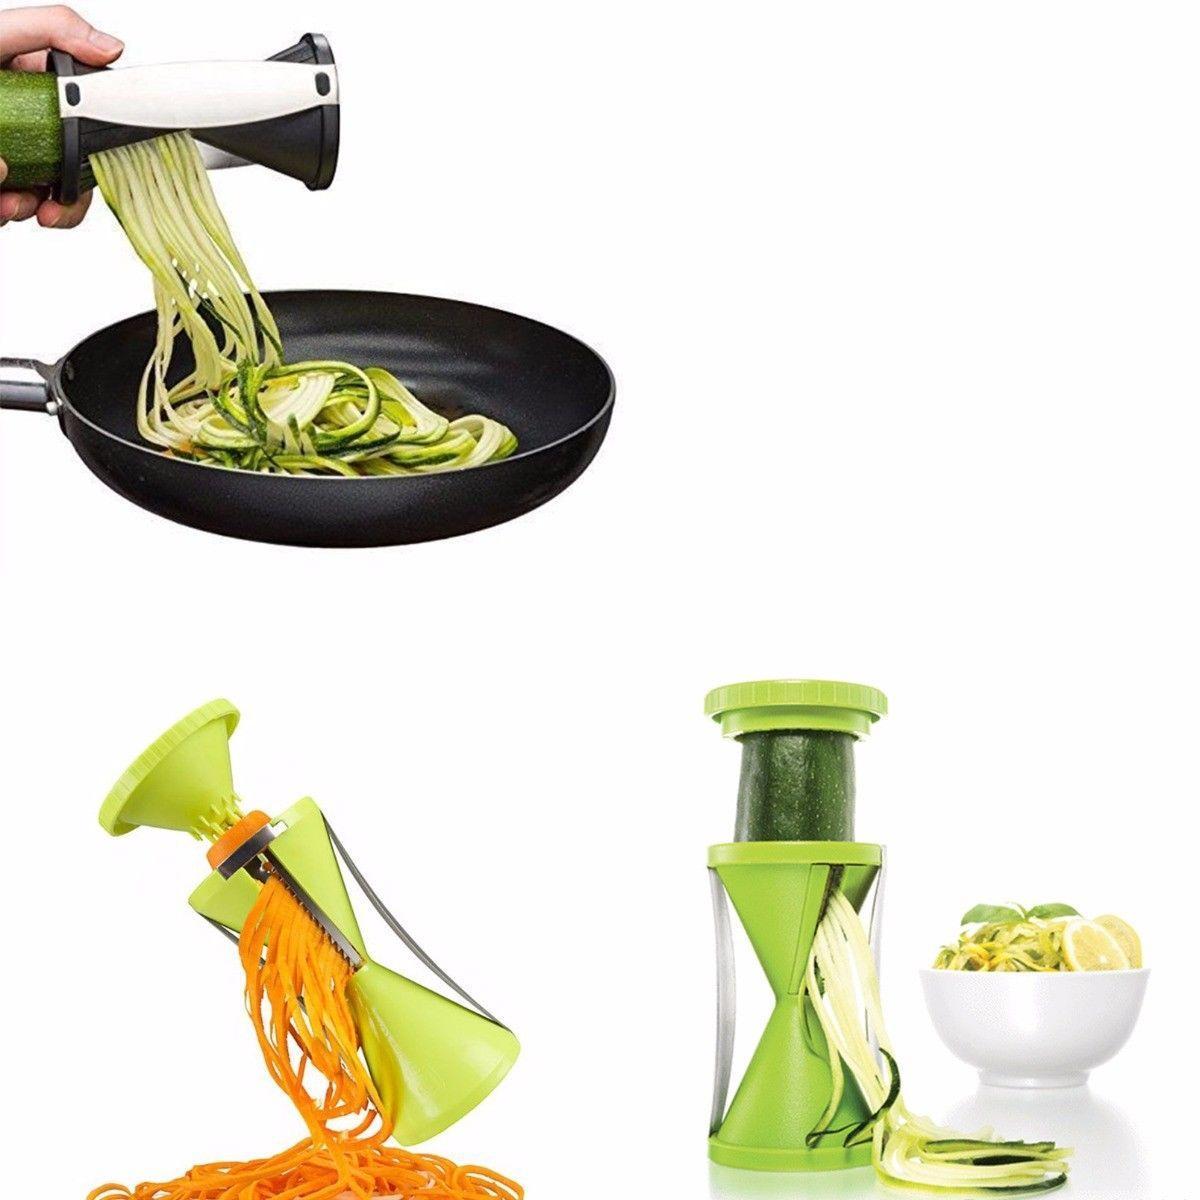 Spiral Slicer Cutter New Kitchen Tool Vegetable Fruit Spiralizer Twister Peeler 4305 (Parcel Rate)